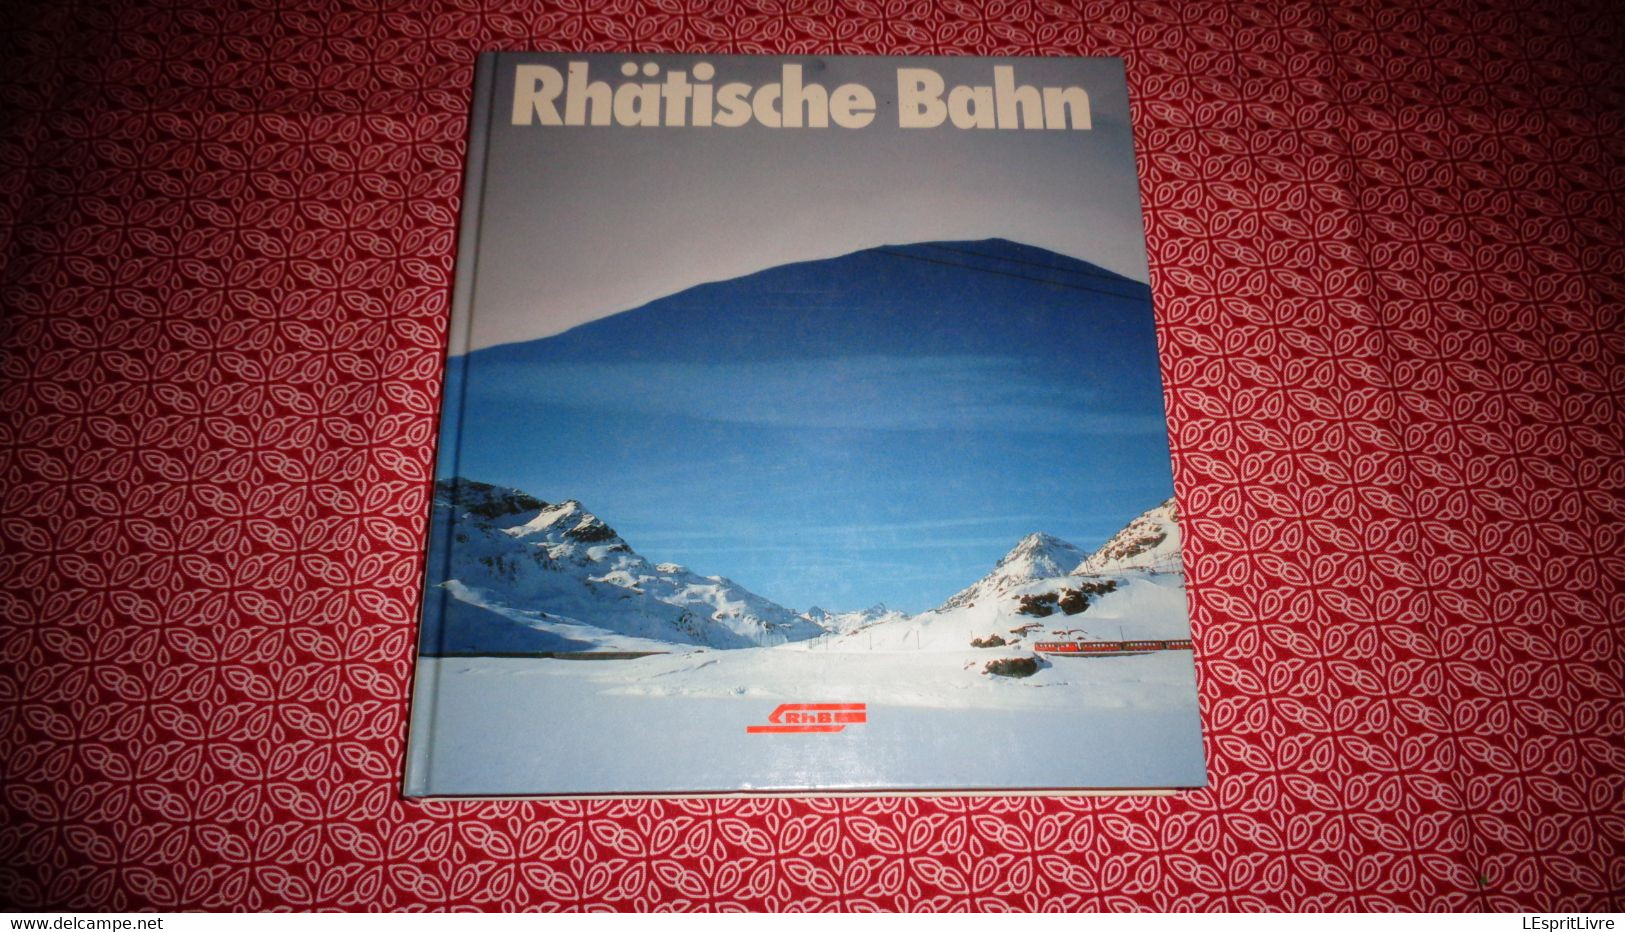 RHÄTISCHE BAHN RhB Switzerland Suisse Chemins De Fer Suisse Railway Swiss Eisenbahn Davos Arosa Churs CFF - Art Prints